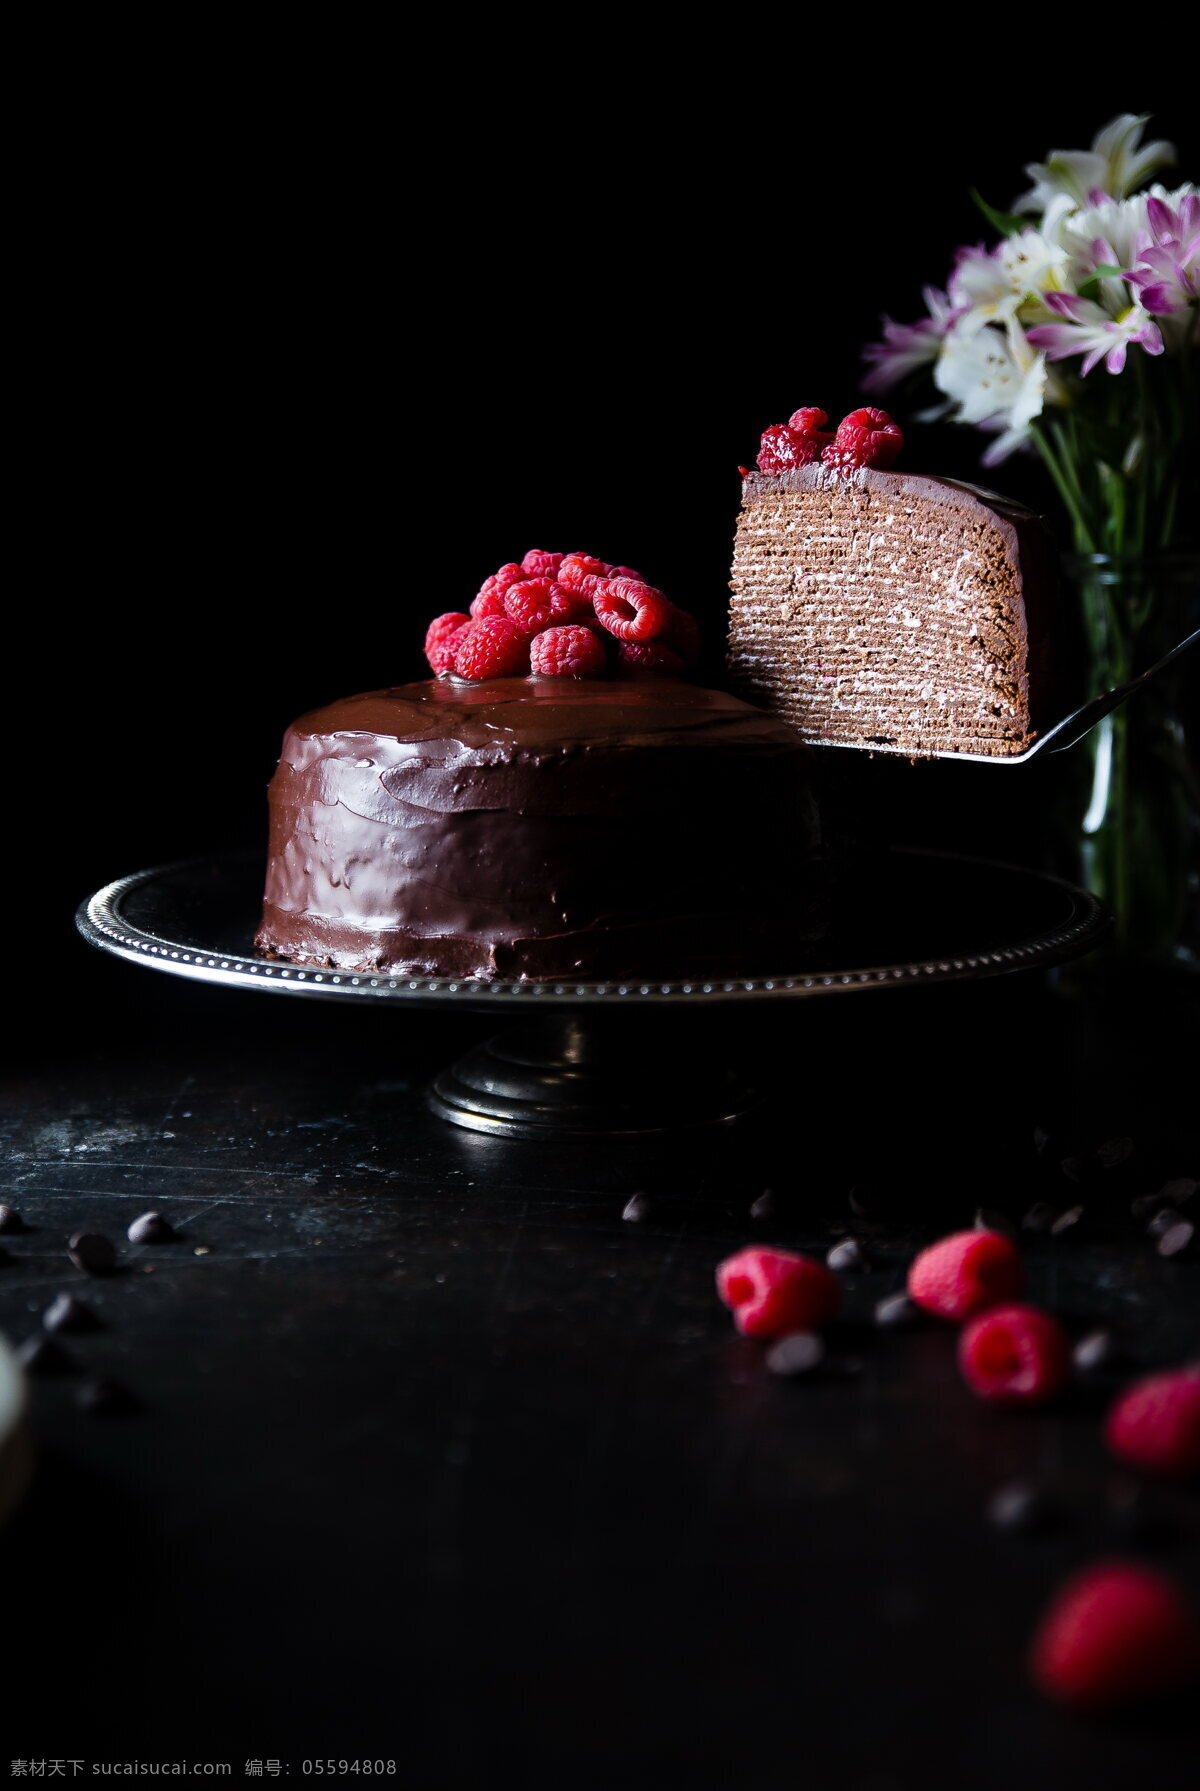 美味 巧克力 蛋糕 巧克力蛋糕 糕点 点心 奶油蛋糕 生日蛋糕 烘焙食品 美食 餐饮 饮食 餐饮美食 西餐美食